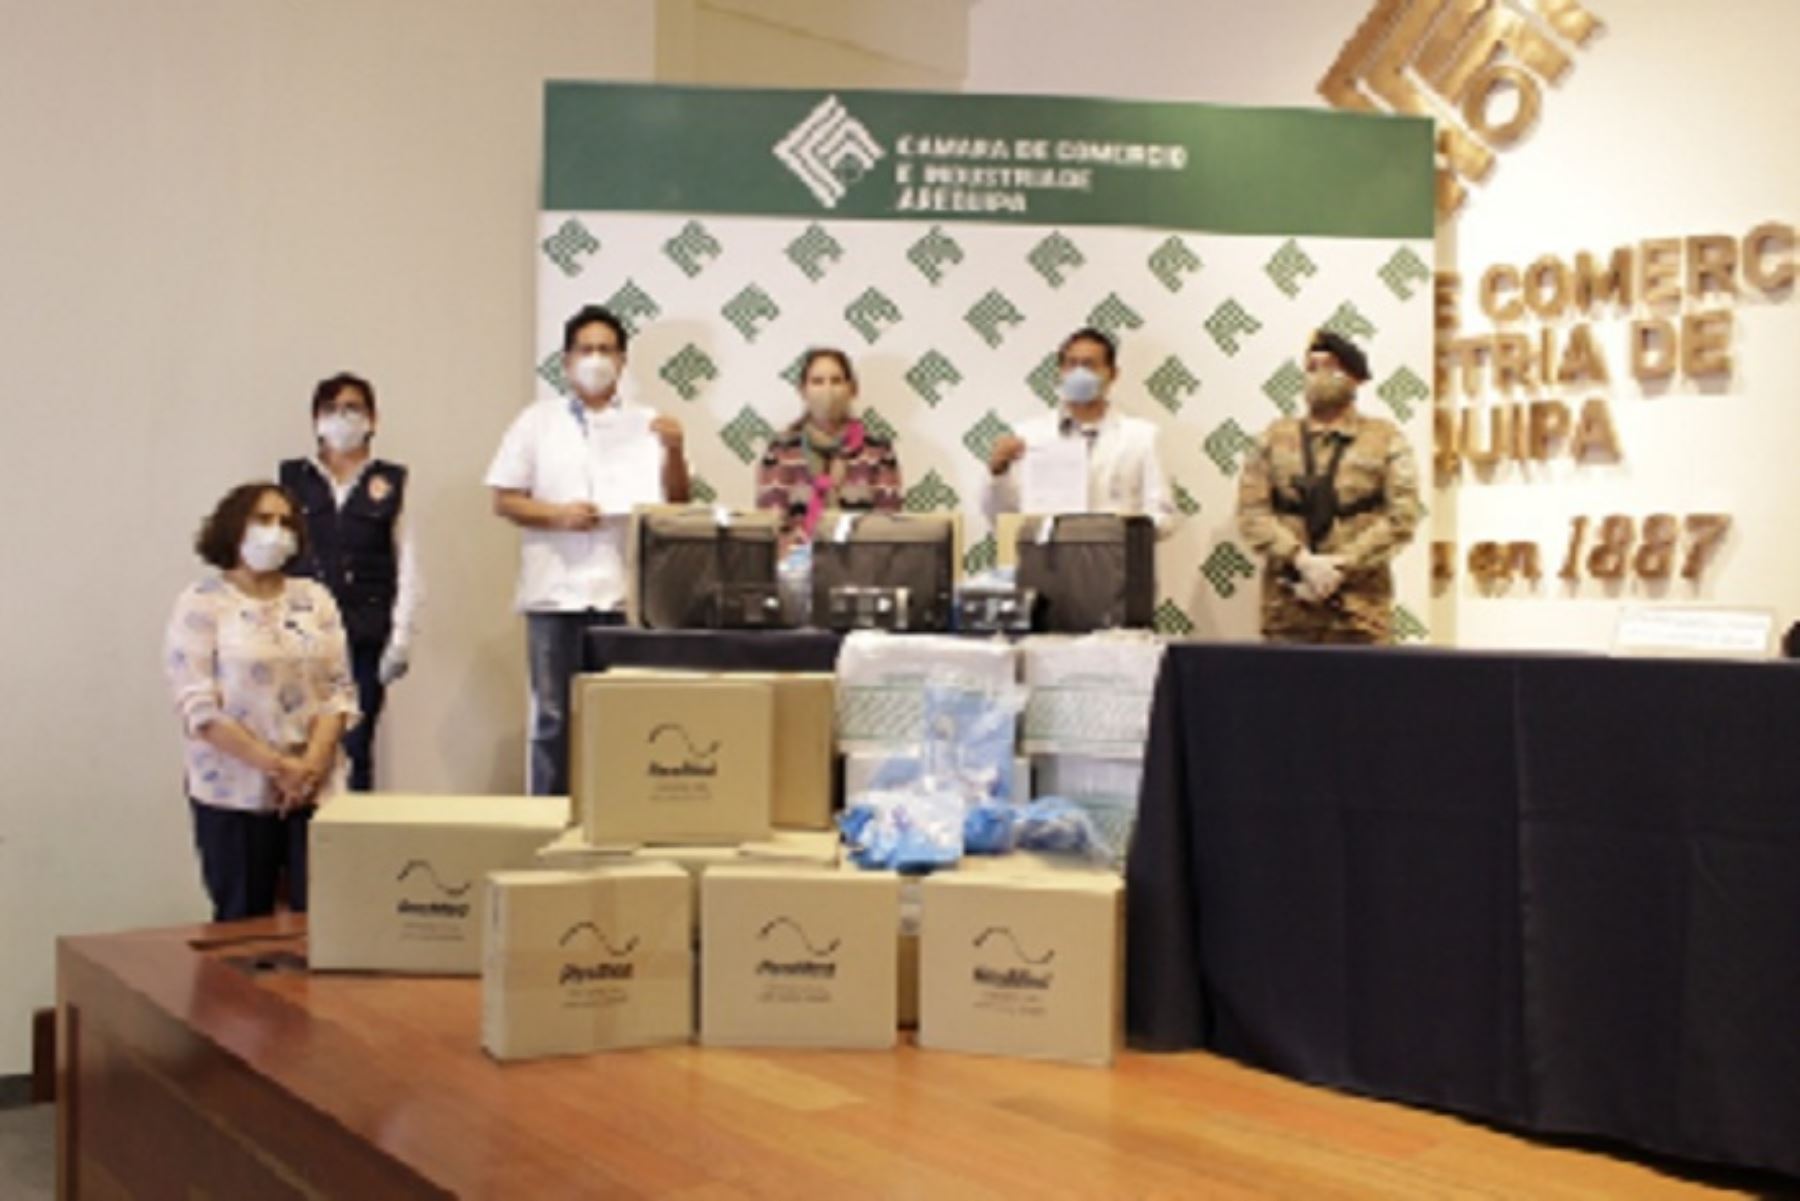 La presidenta de la Cámara de Comercio e Industria de Arequipa (CCIA), Jéssica Rodríguez, entregó el donativo que consta de 14 ventiladores artificiales para la atención de pacientes en cuidados intermedios.